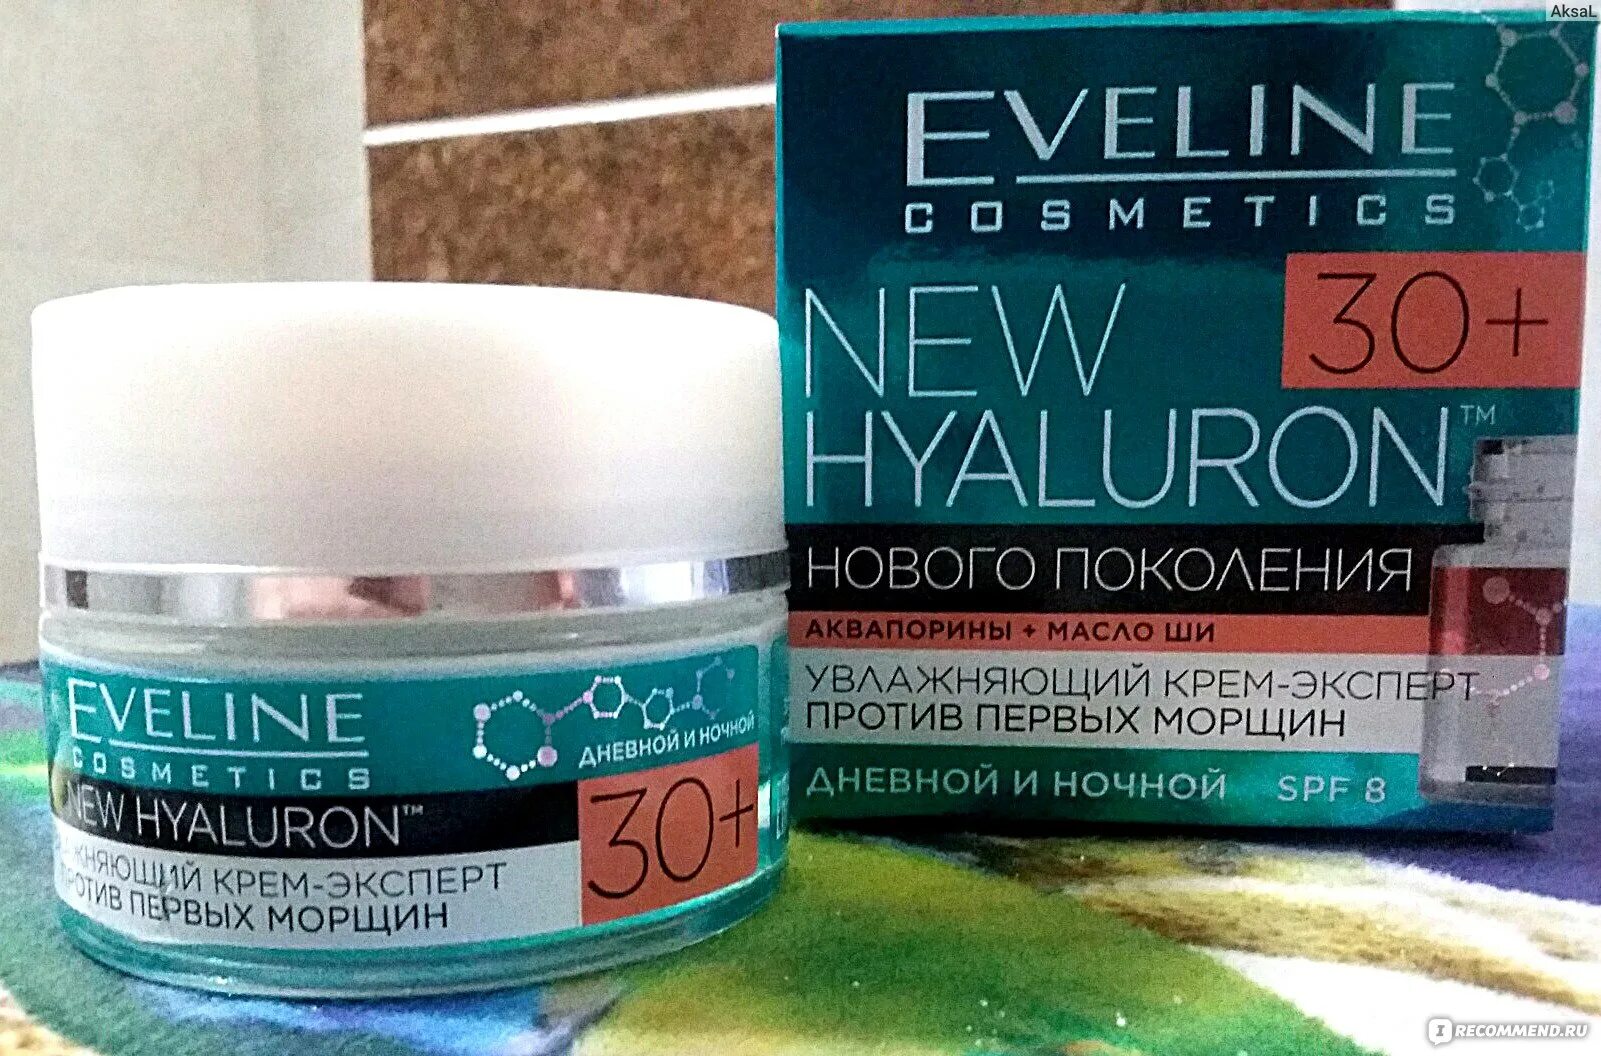 Крема eveline увлажняющий. Крем Эвелин 30+. Крем Eveline Cosmetics New Hyaluron 30+. Эвелин / Eveline New Hyaluron. Эвелин крем от первых морщин 30 SPF.